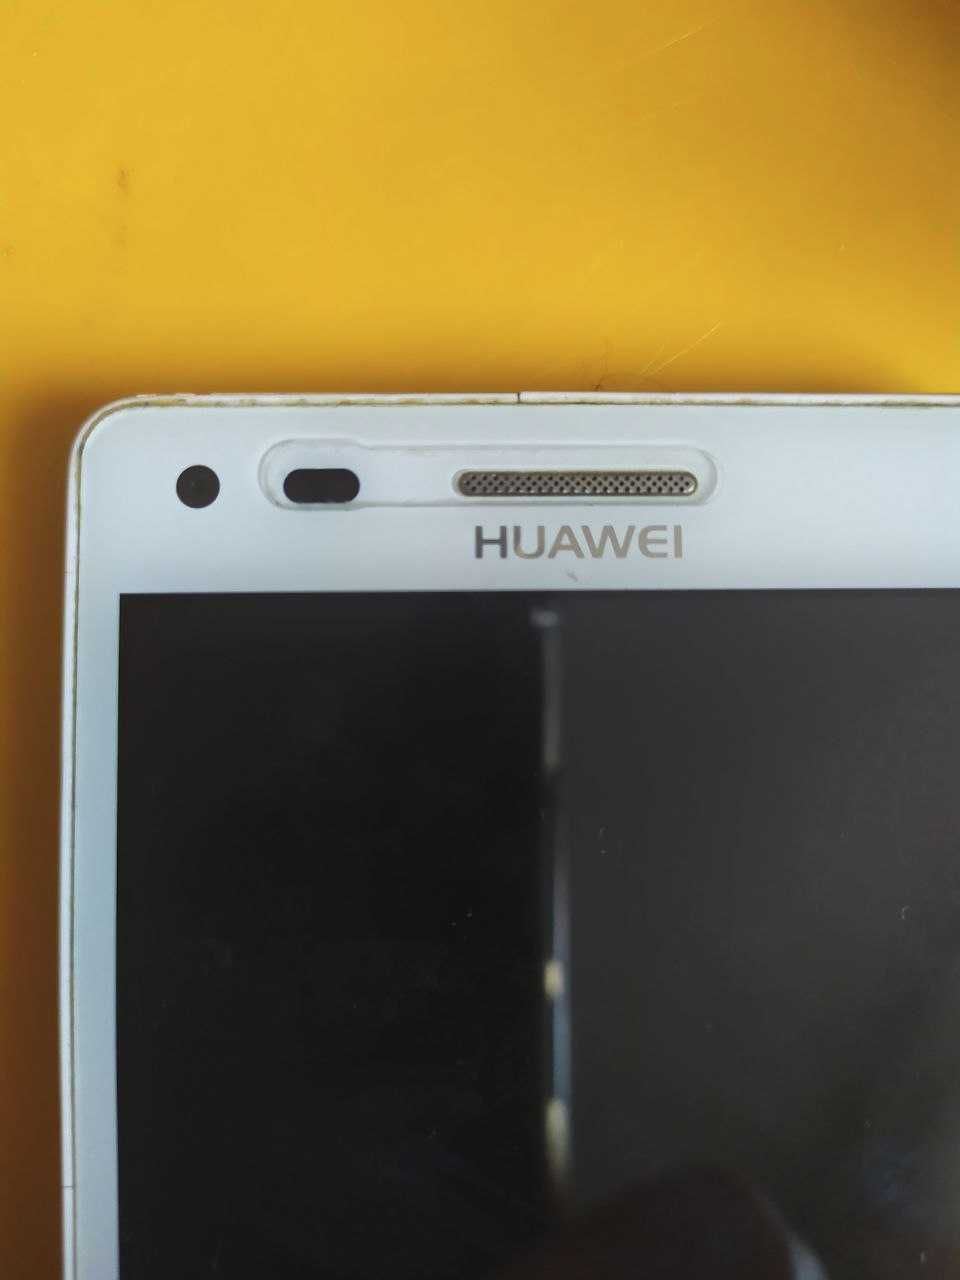 Huawei Ascend G6-U10